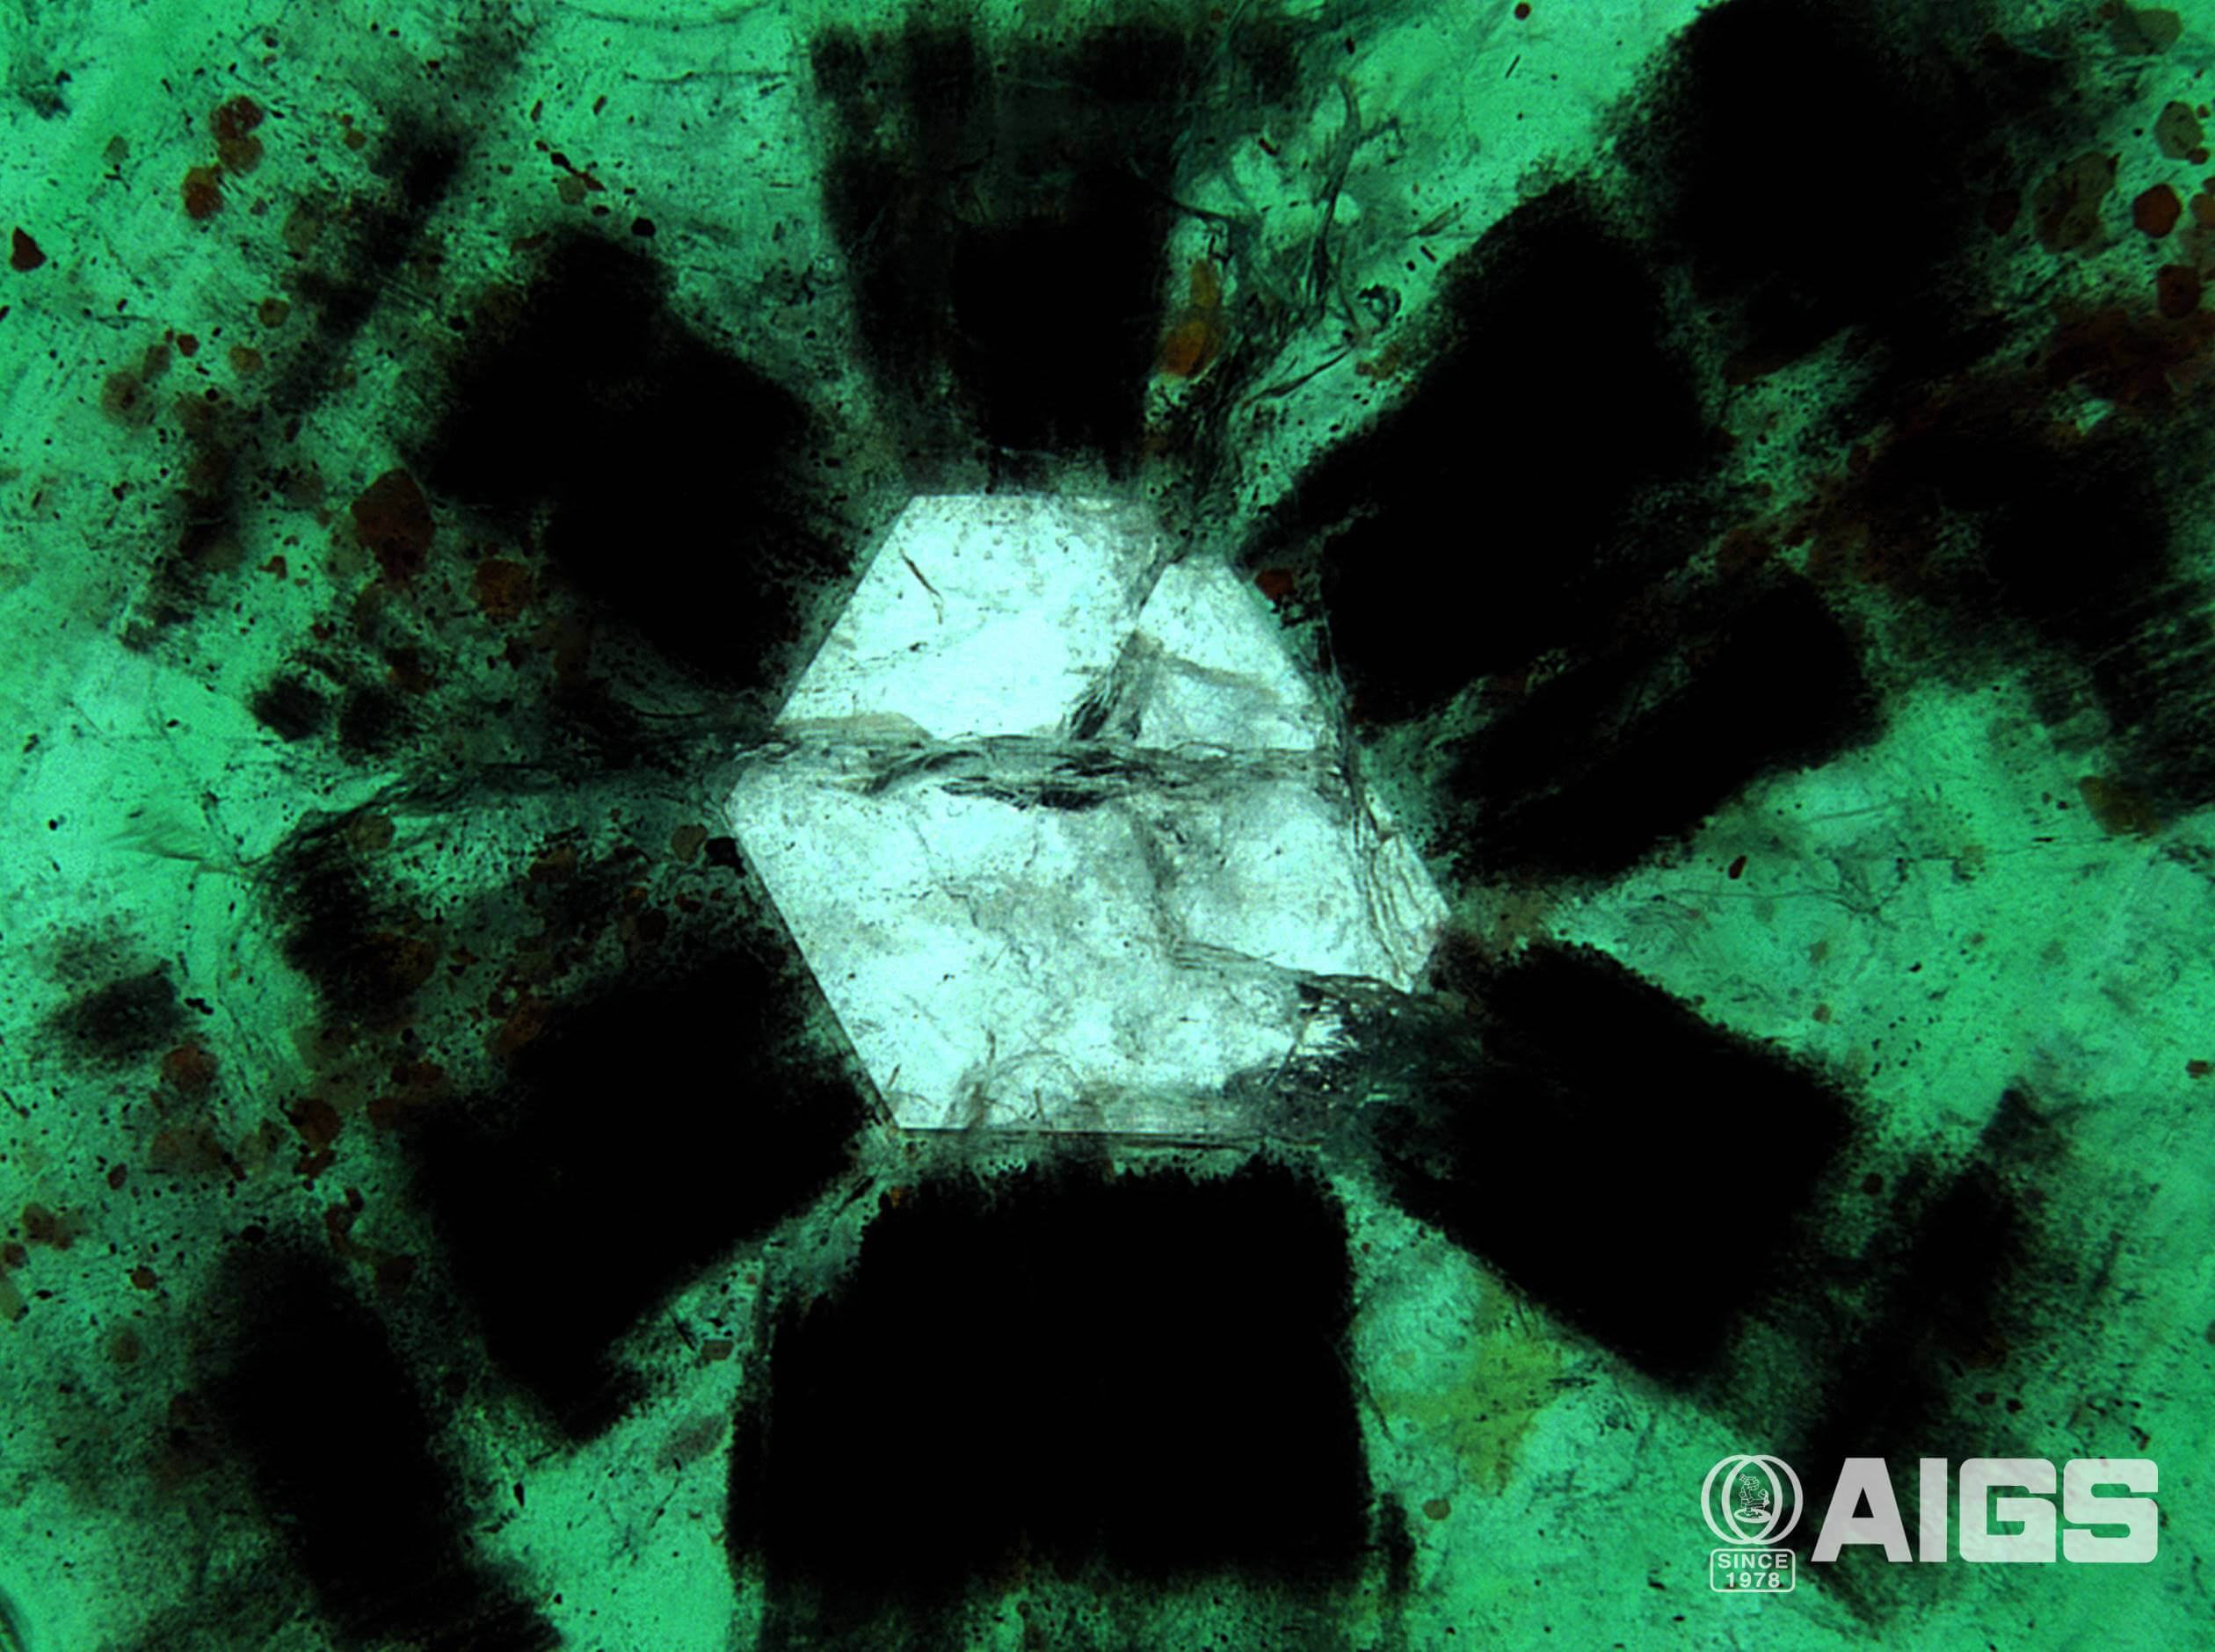 زمرد تراپیچه نادر حاوی پره های سیاه و یک هسته واضح از زمرد سبز عمیق از سوات پاکستان است